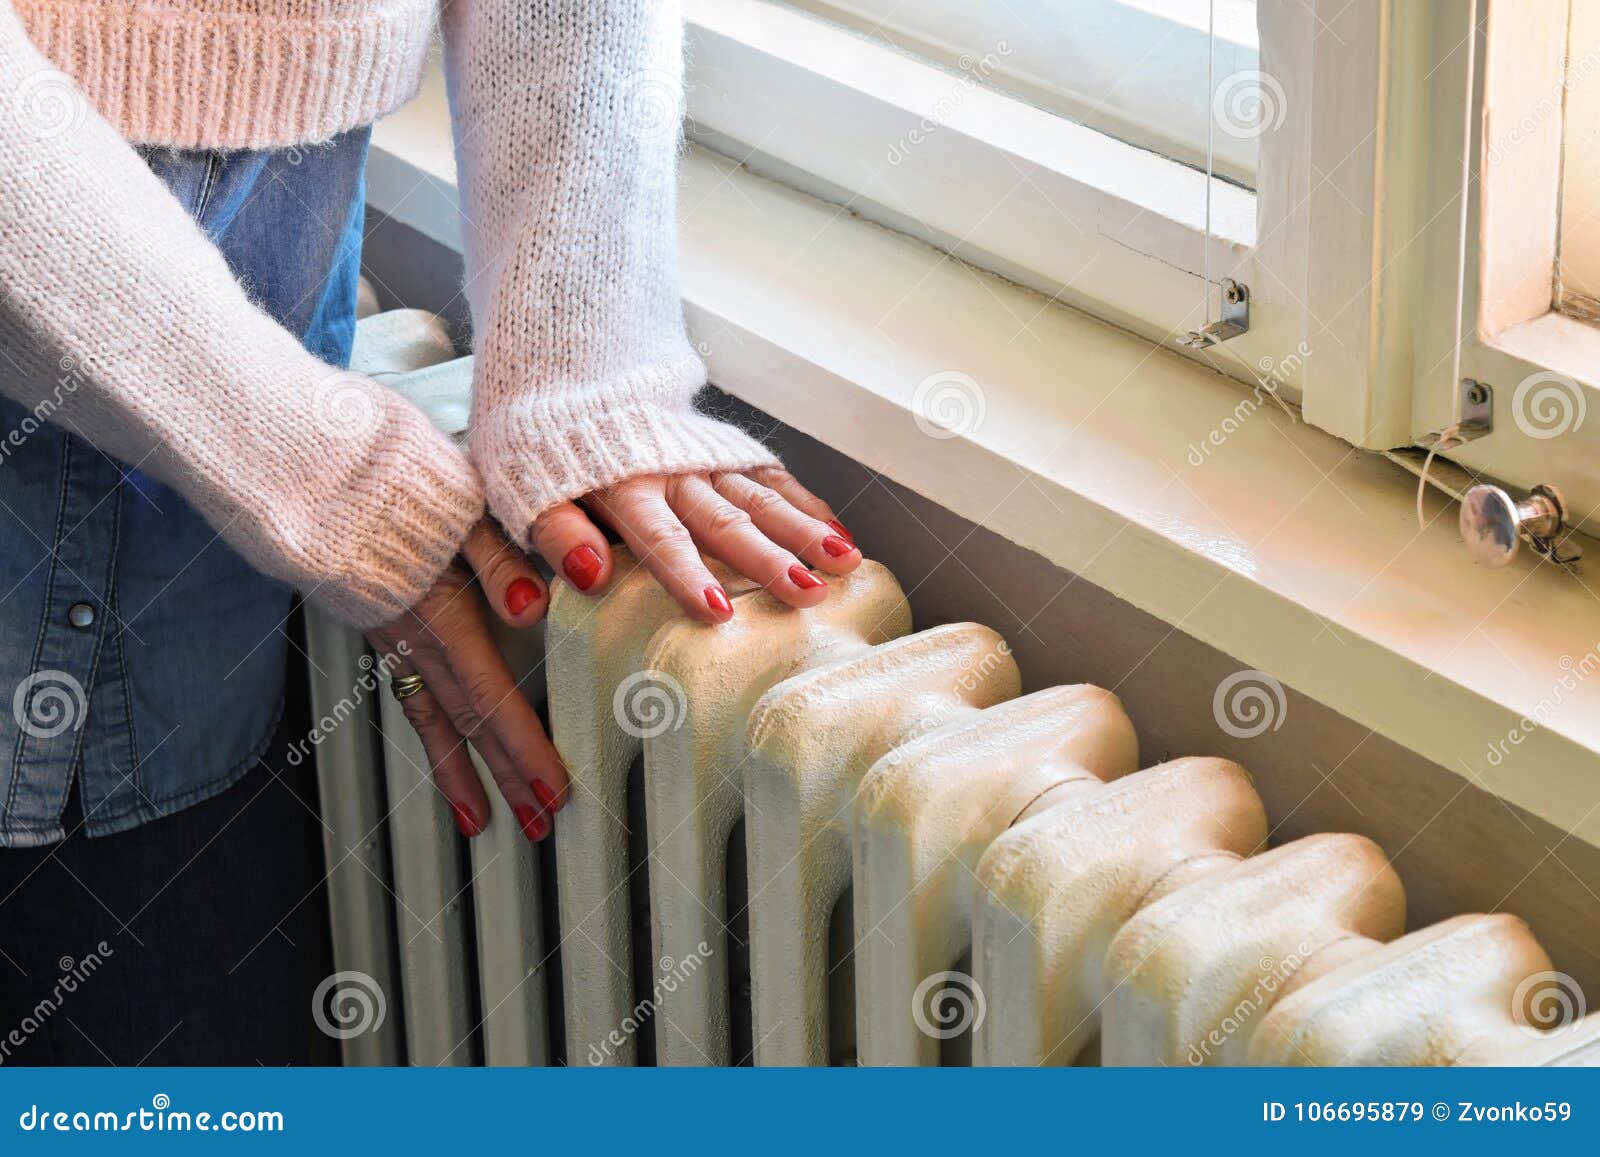 central heating - heavy duty radiator